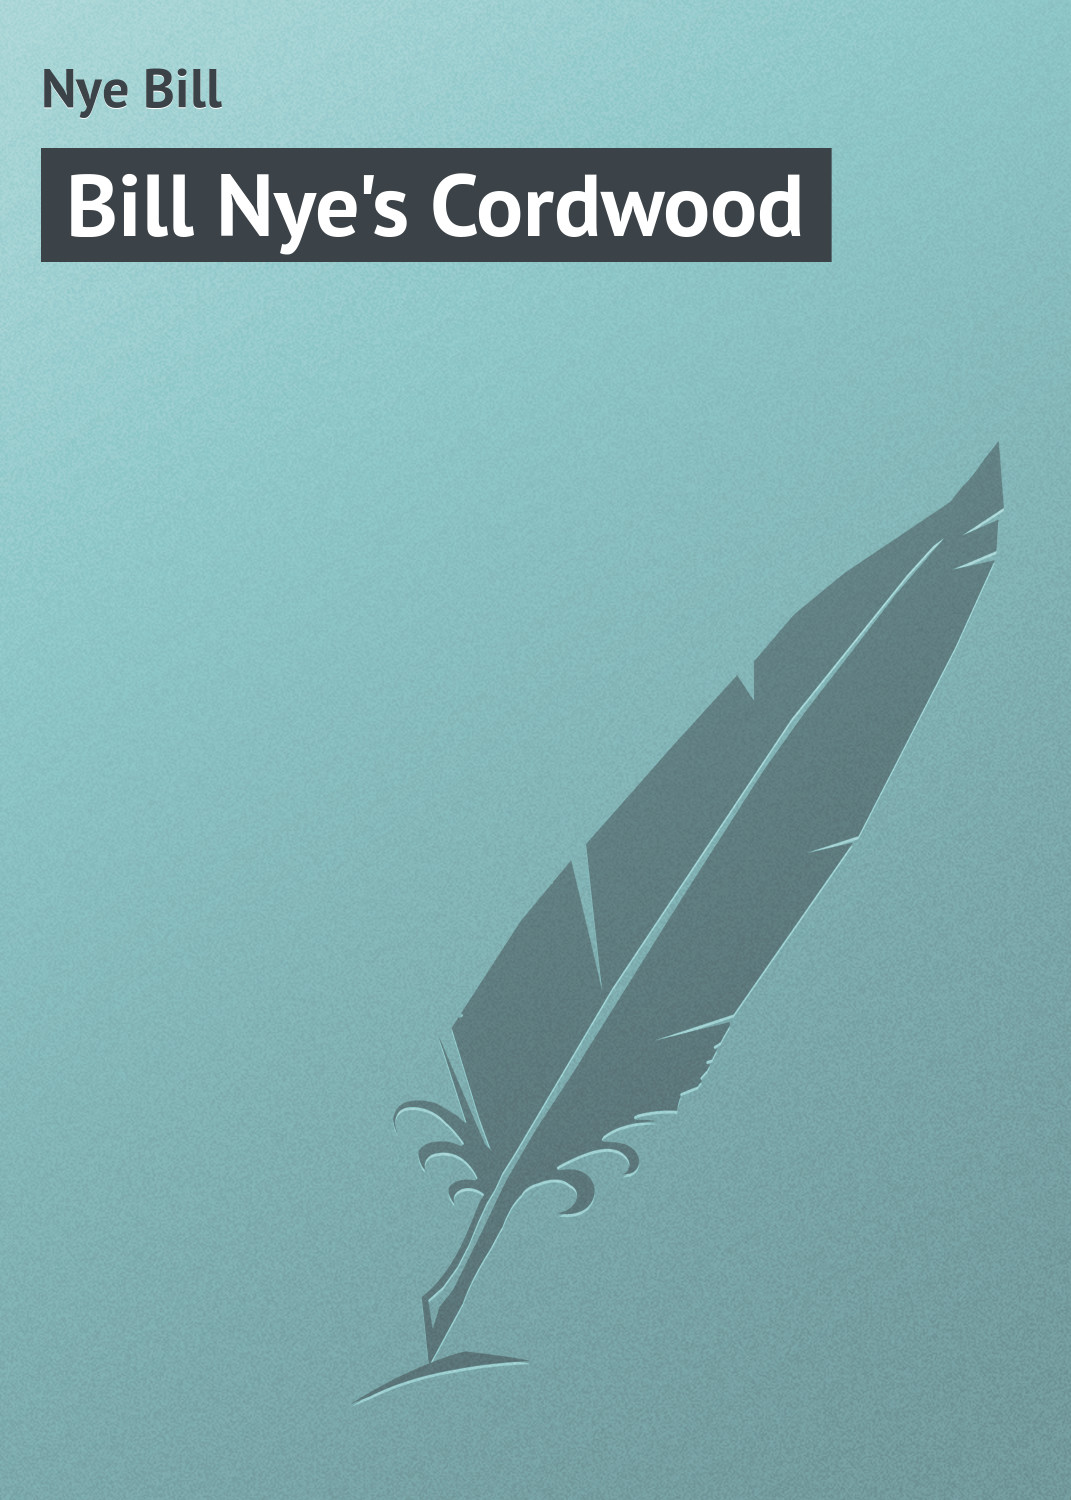 Книга Bill Nye's Cordwood из серии , созданная Bill Nye, может относится к жанру Зарубежная классика, Зарубежный юмор. Стоимость электронной книги Bill Nye's Cordwood с идентификатором 23164931 составляет 5.99 руб.